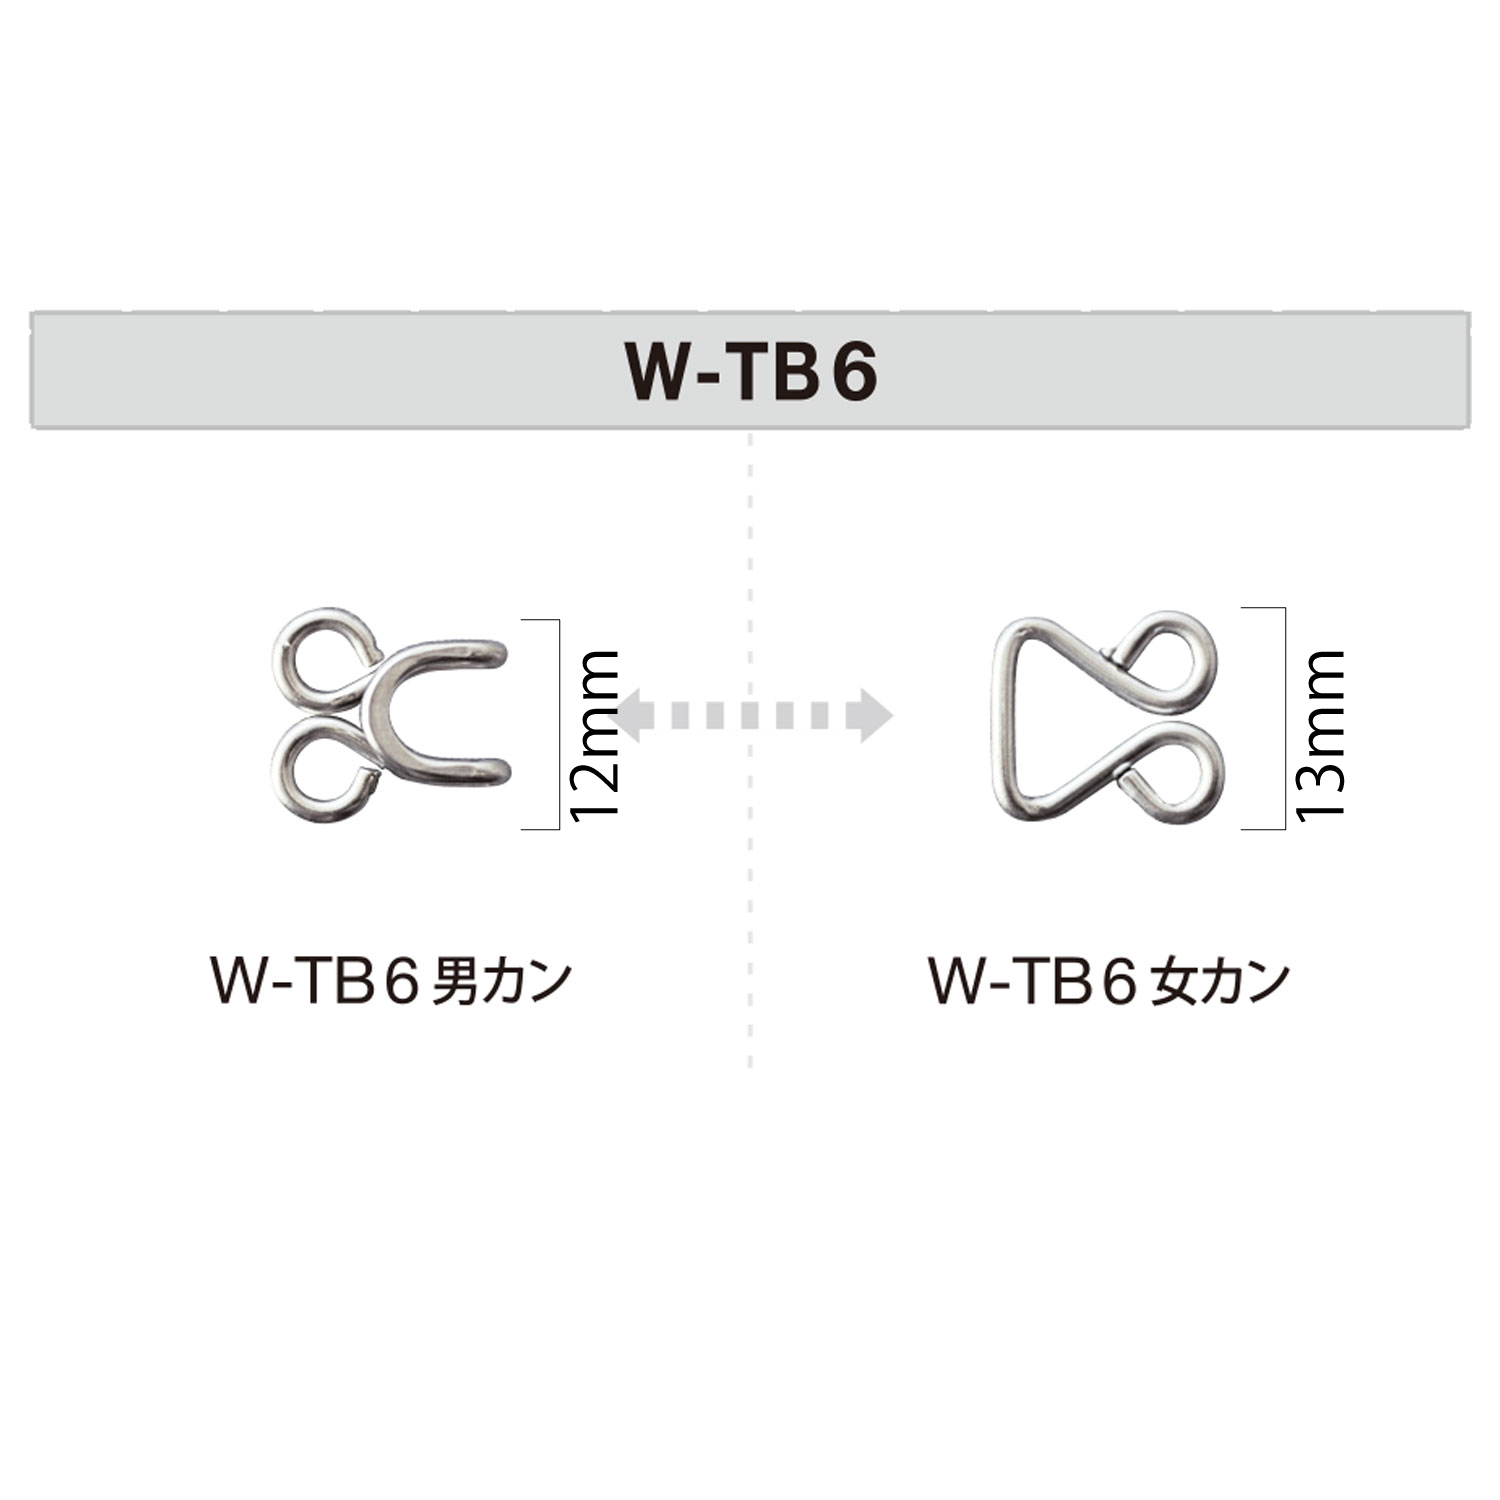 W-TB6 Crochet Tonbi[Accrocher] Morito